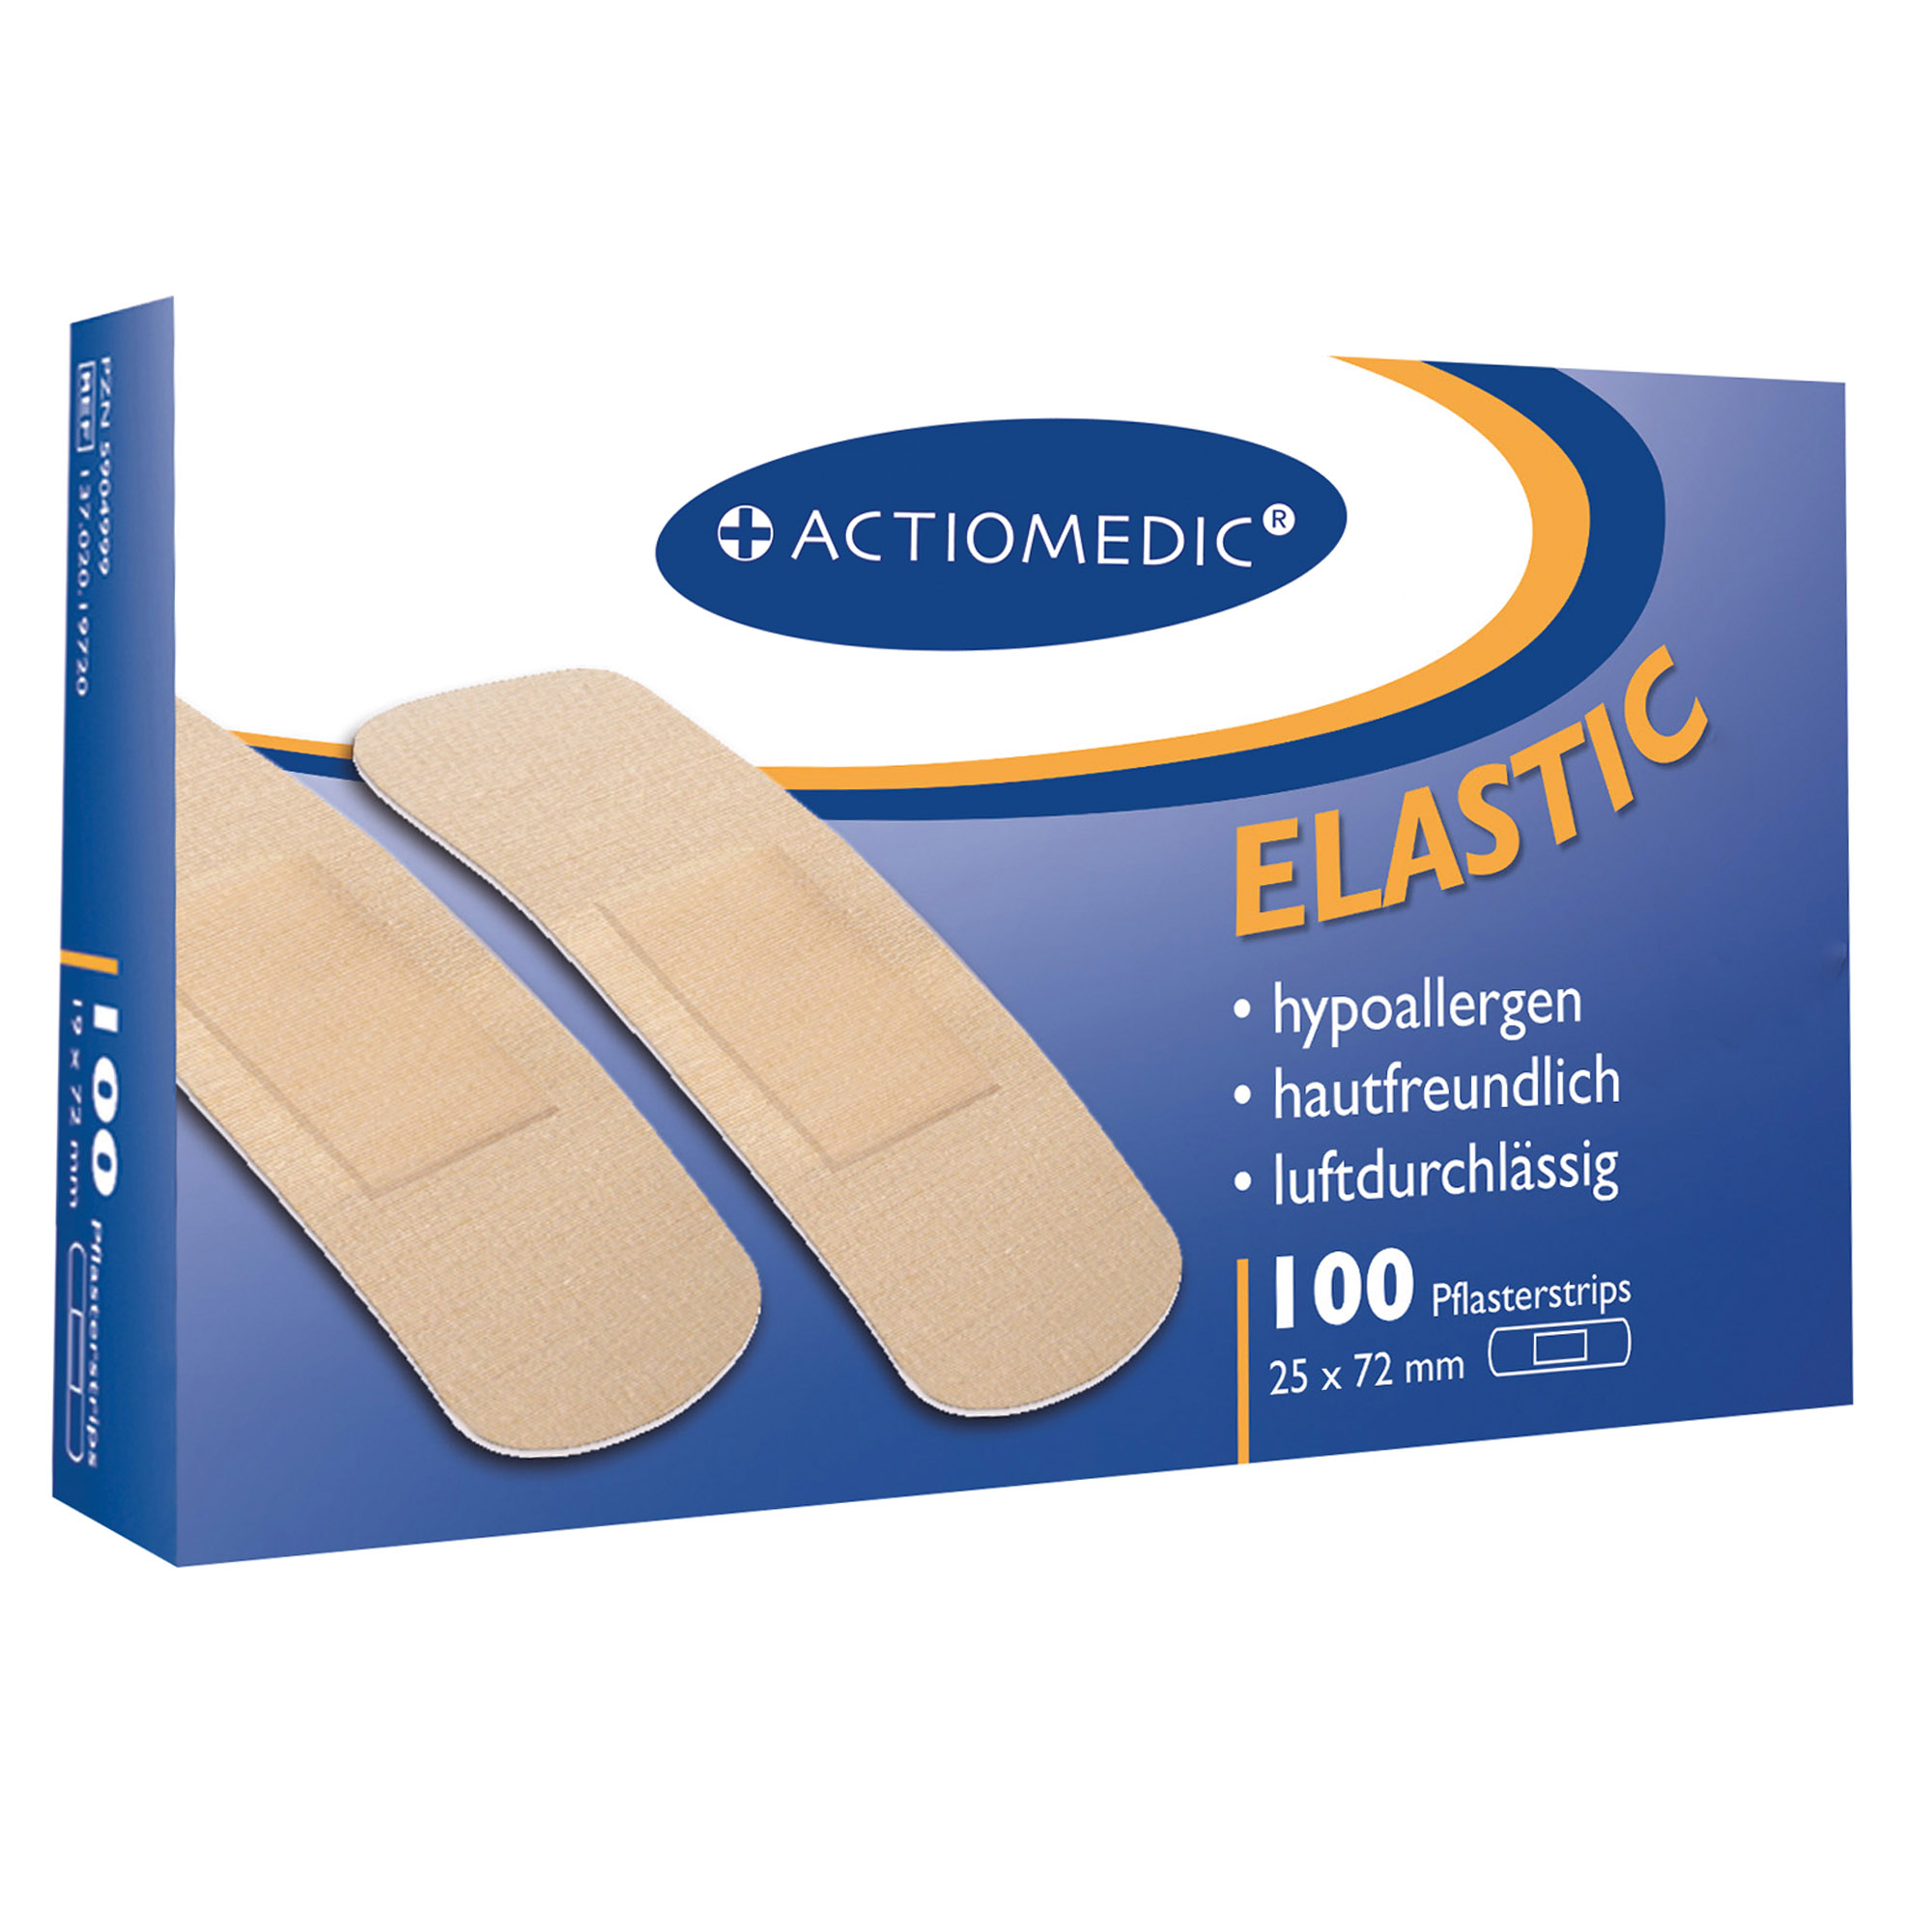 Actiomedic® ELASTIC Pflasterstrips 25 x 72 mm Pack à 100 Stück